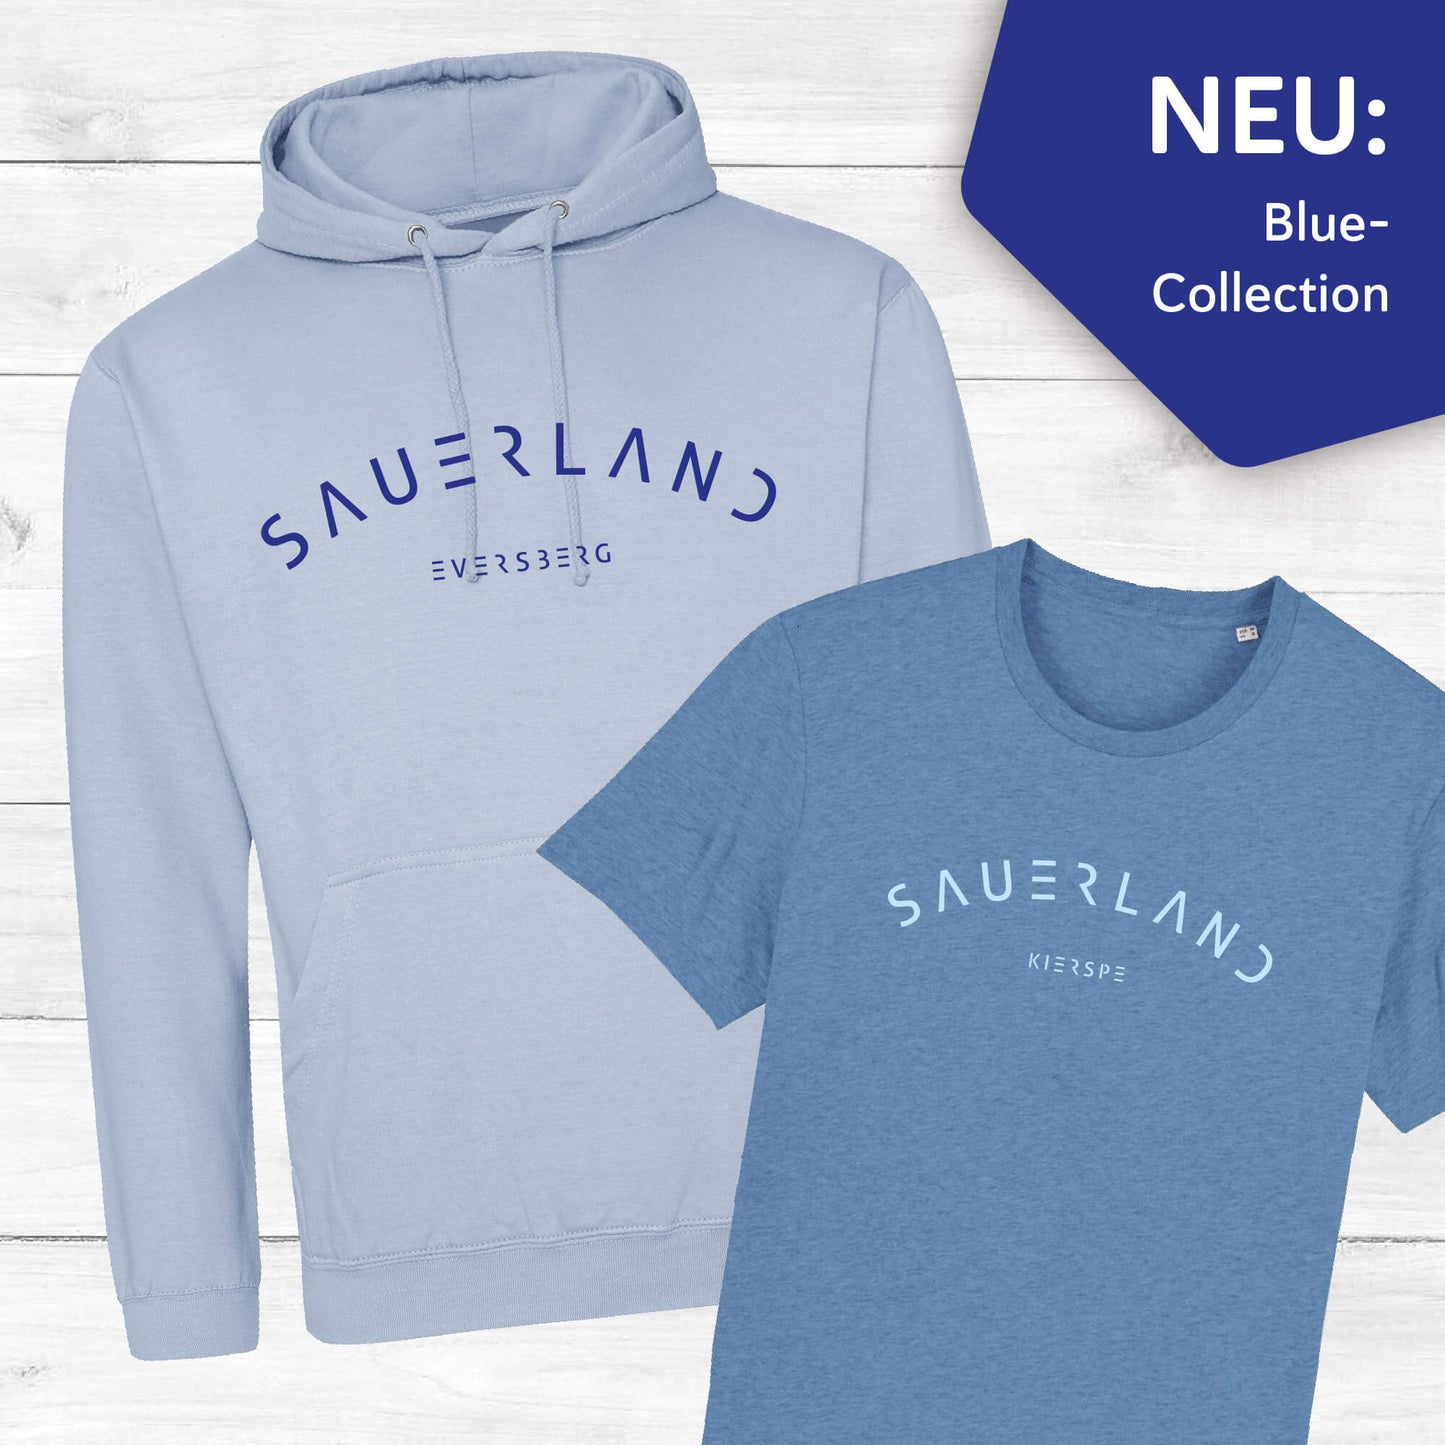 Sauerland Blue Collection bestehnd aus einem hellblauen Hoodie und einem mittelblauen T-Shirt. Beide mit dem modernen Sauerland Logo und einem Dorfnamen bedruckt.